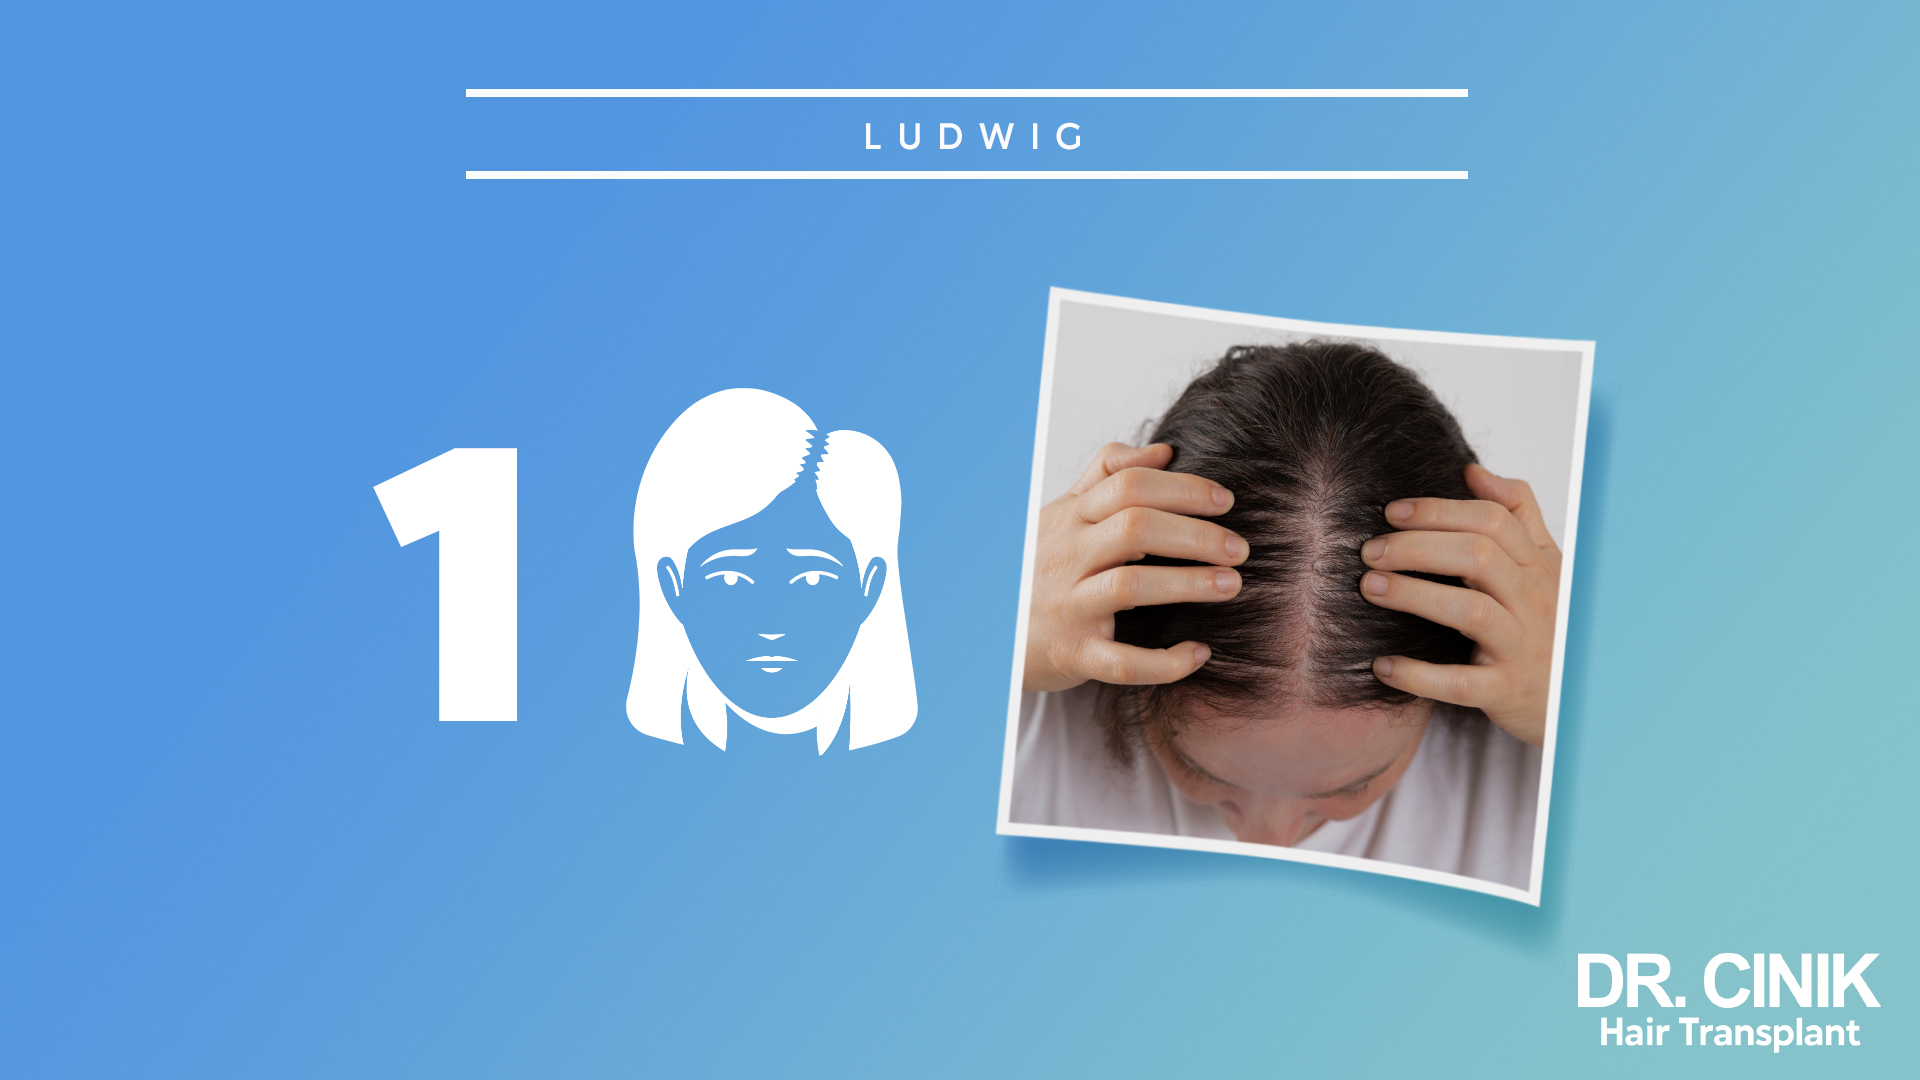 Imagen que muestra el primer paso de la escala Ludwig. A la izquierda, hay un gráfico con el número 1 y una ilustración de una mujer con cabello fino. A la derecha, una foto de una mujer sosteniendo su cabello mostrando adelgazamiento en la parte superior de la cabeza. Fondo azul con texto que dice 'DR. CINIK Hair Transplant'.